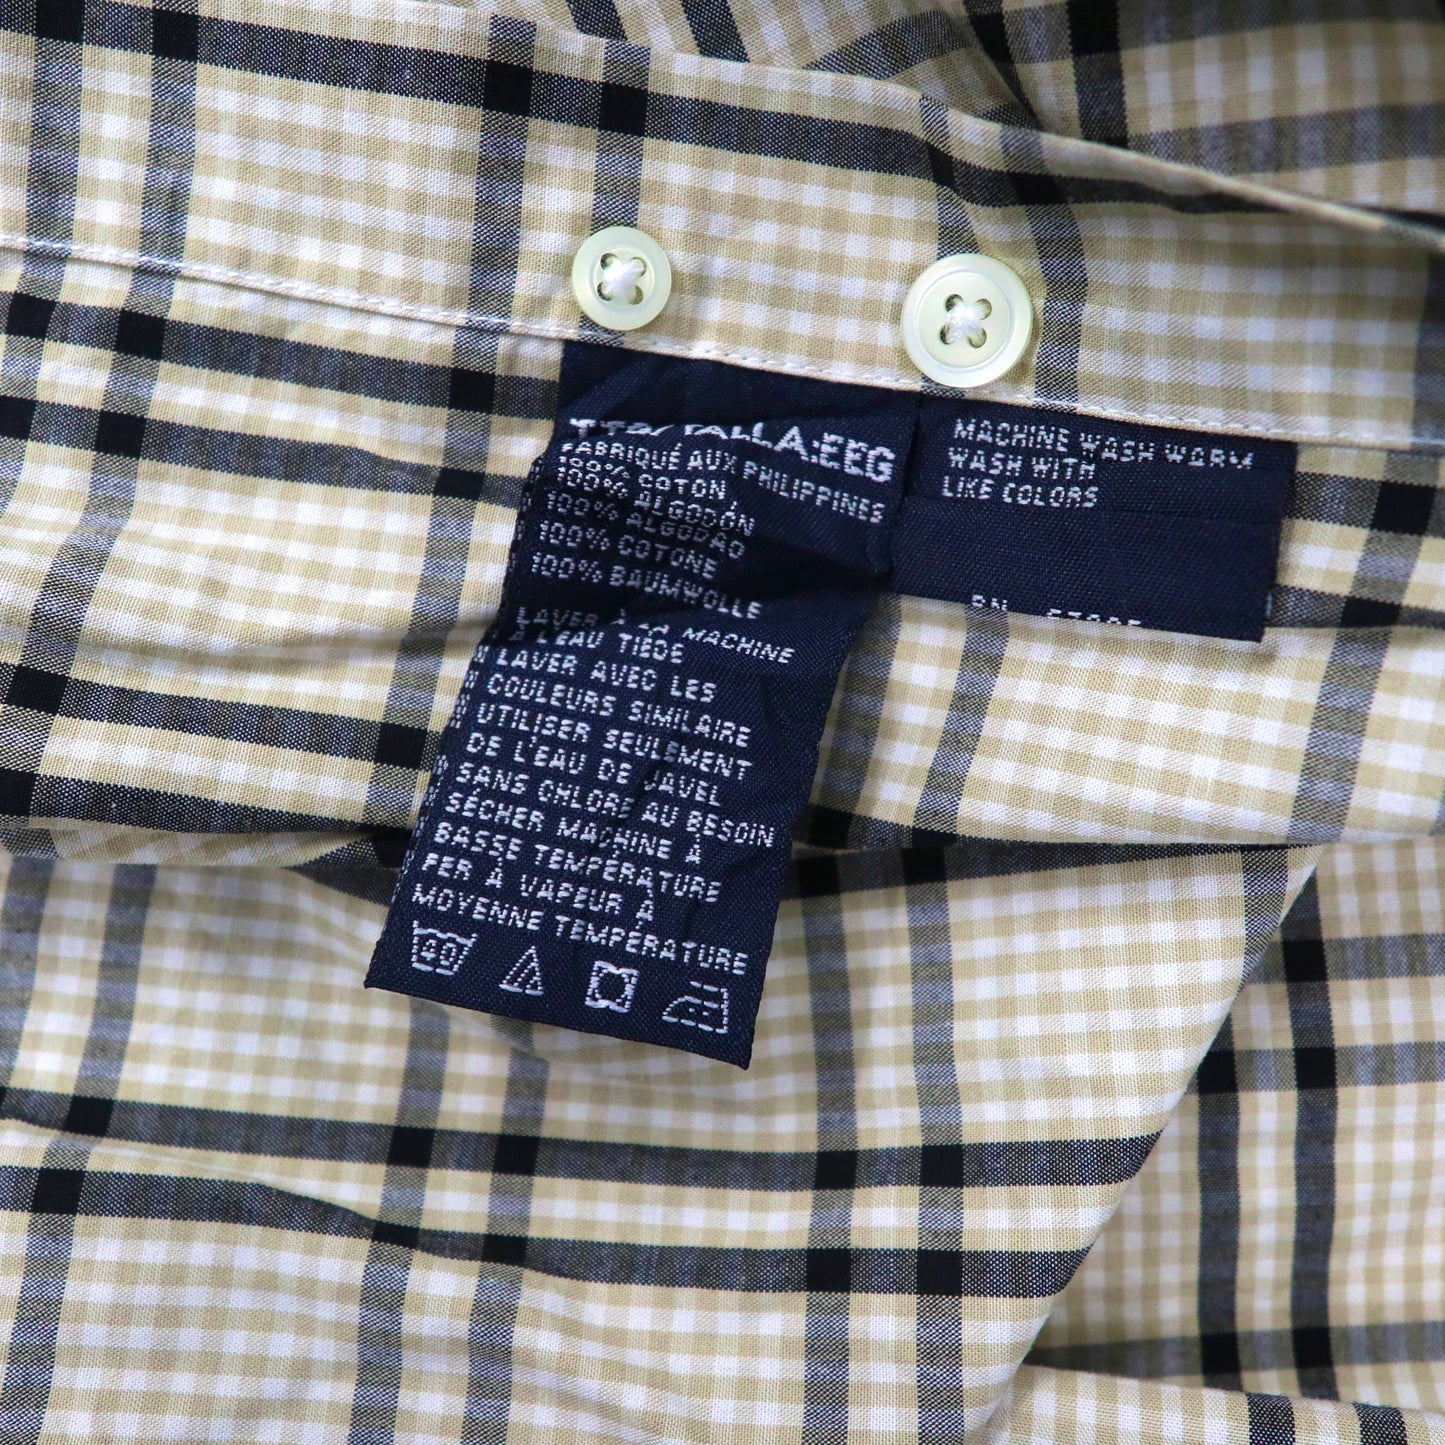 NAUTICA ビッグサイズ ボタンダウンシャツ XXL ベージュ チェック コットン ワンポイントロゴ刺繍